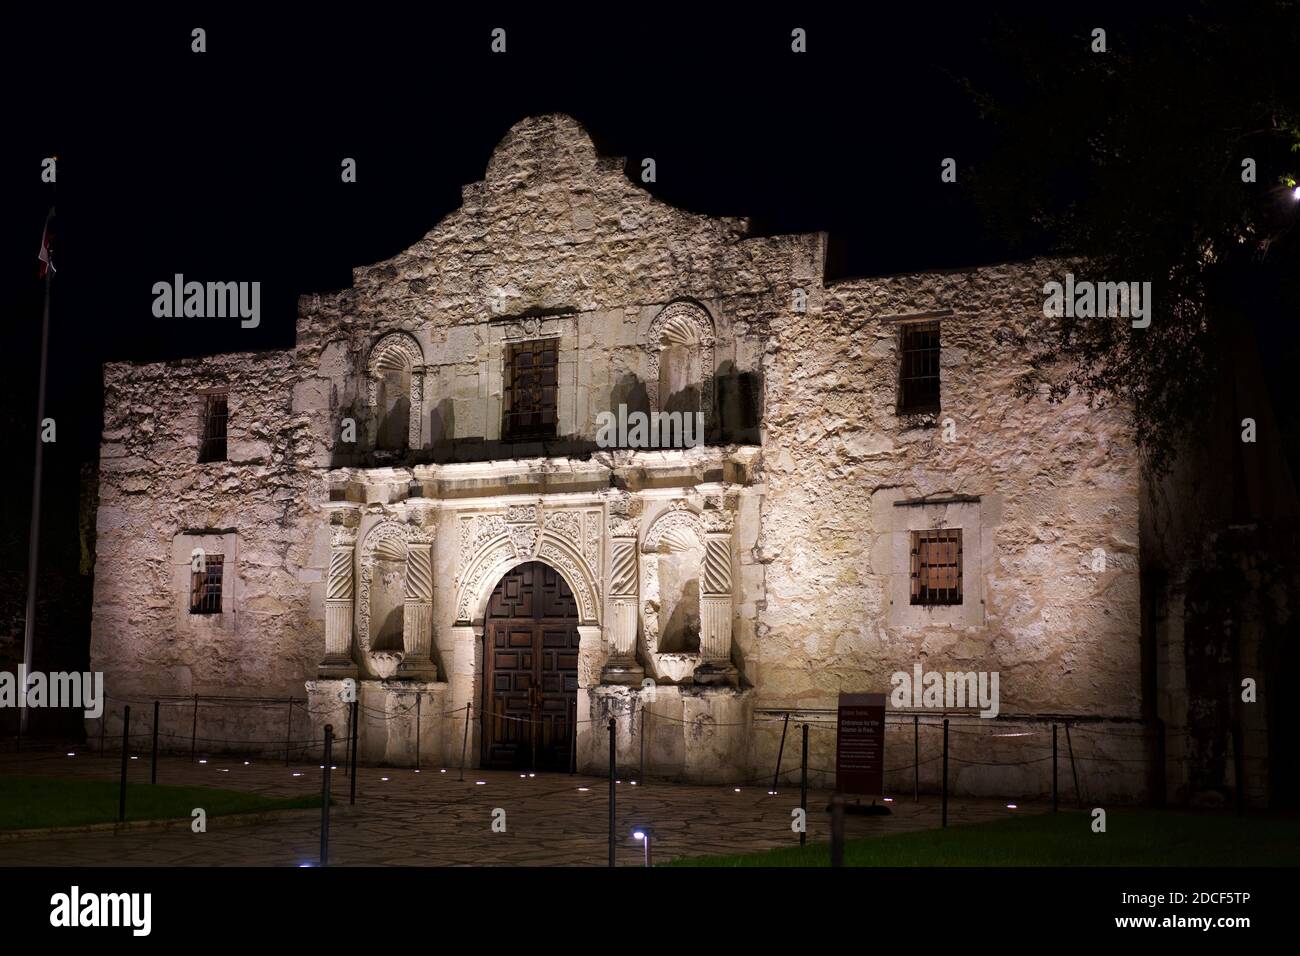 Extérieur du site historique d'Alamo à San Antonio, Texas la nuit Banque D'Images